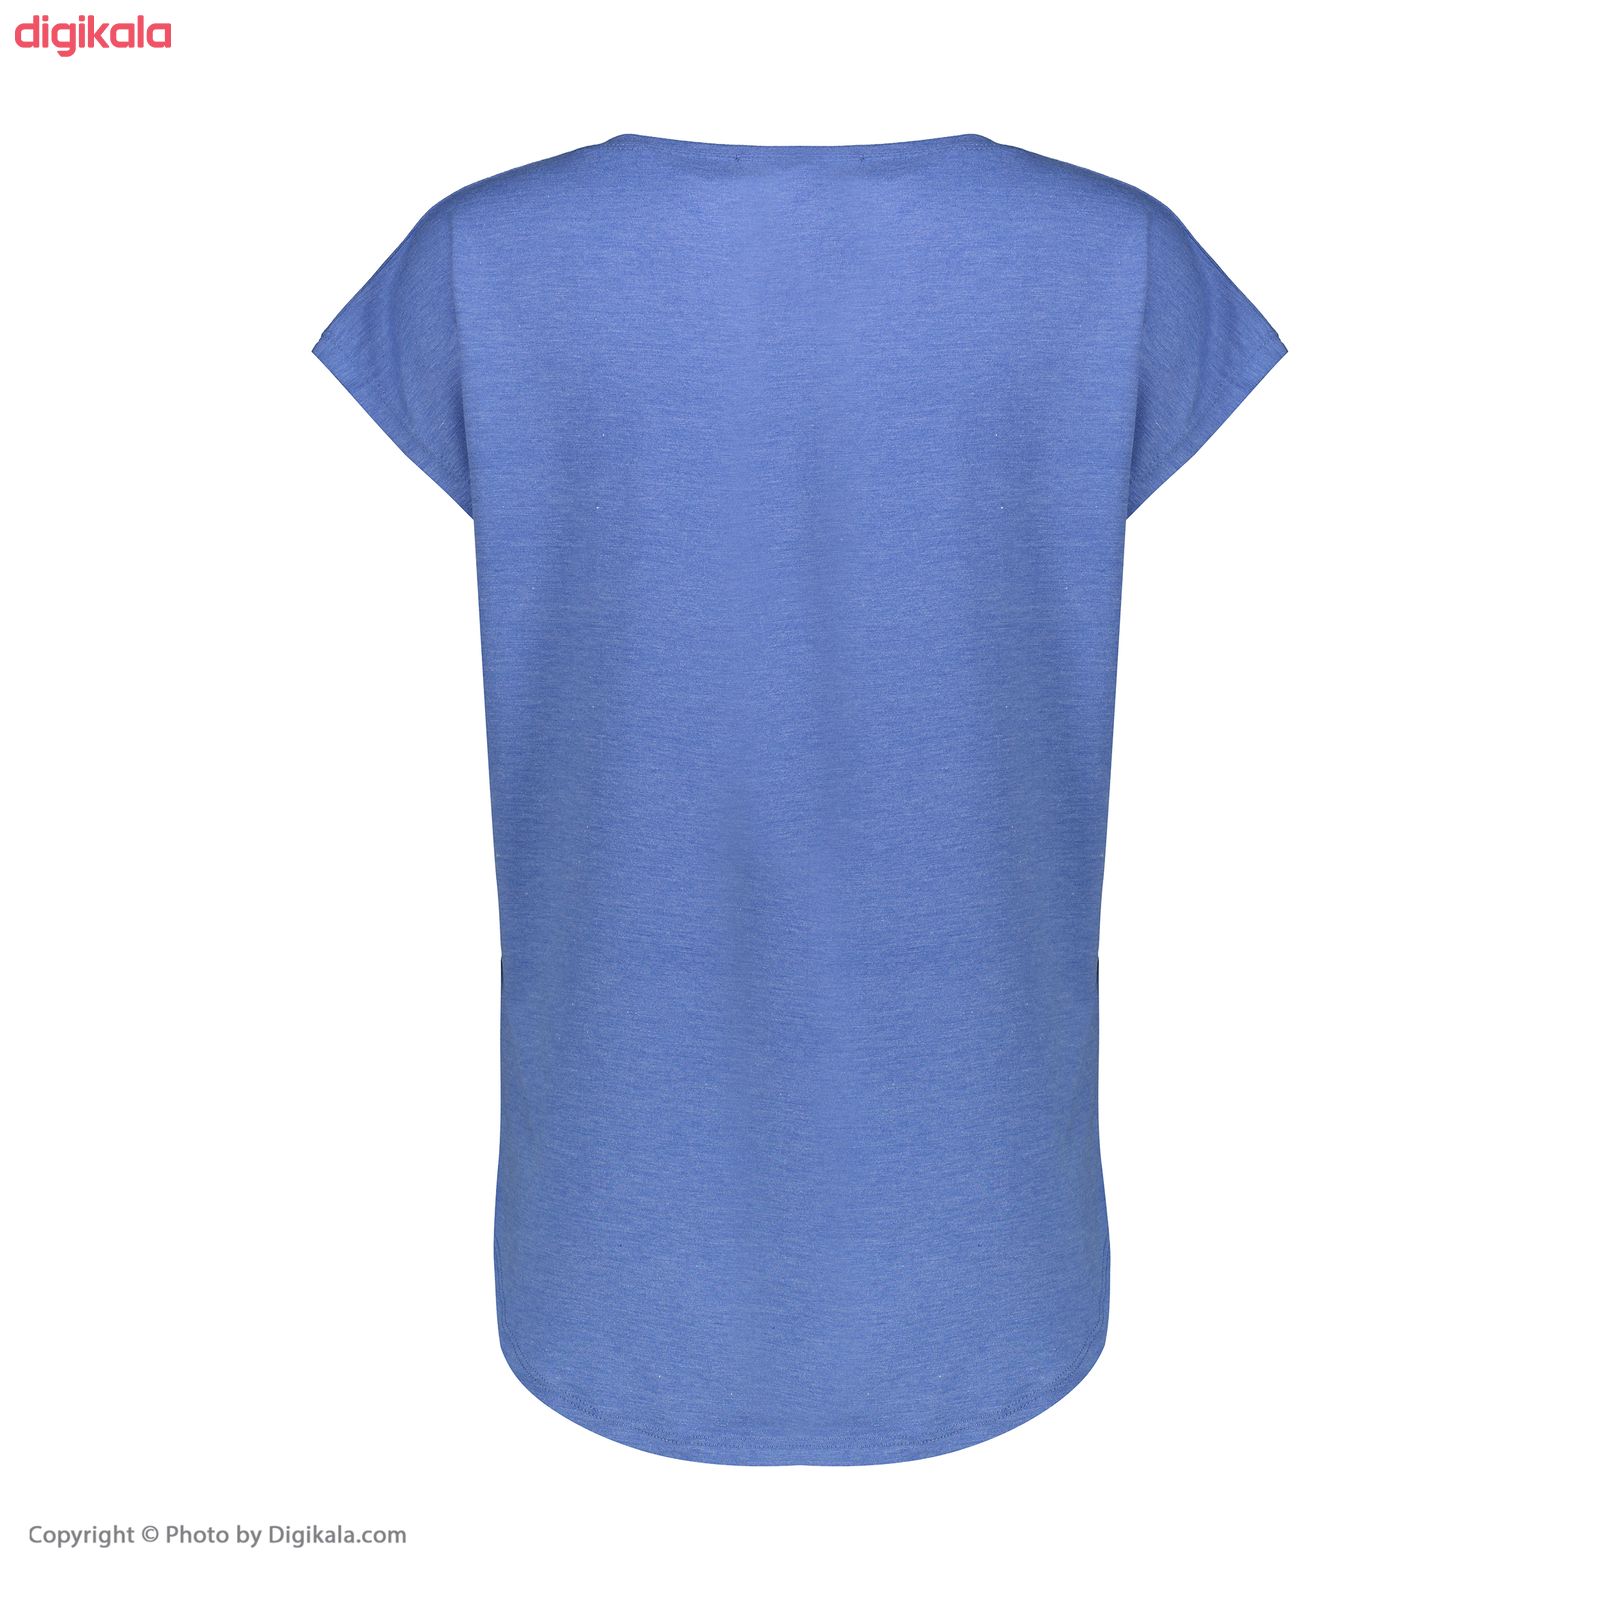  تی شرت زنانه افراتین کد 2517 رنگ آبی